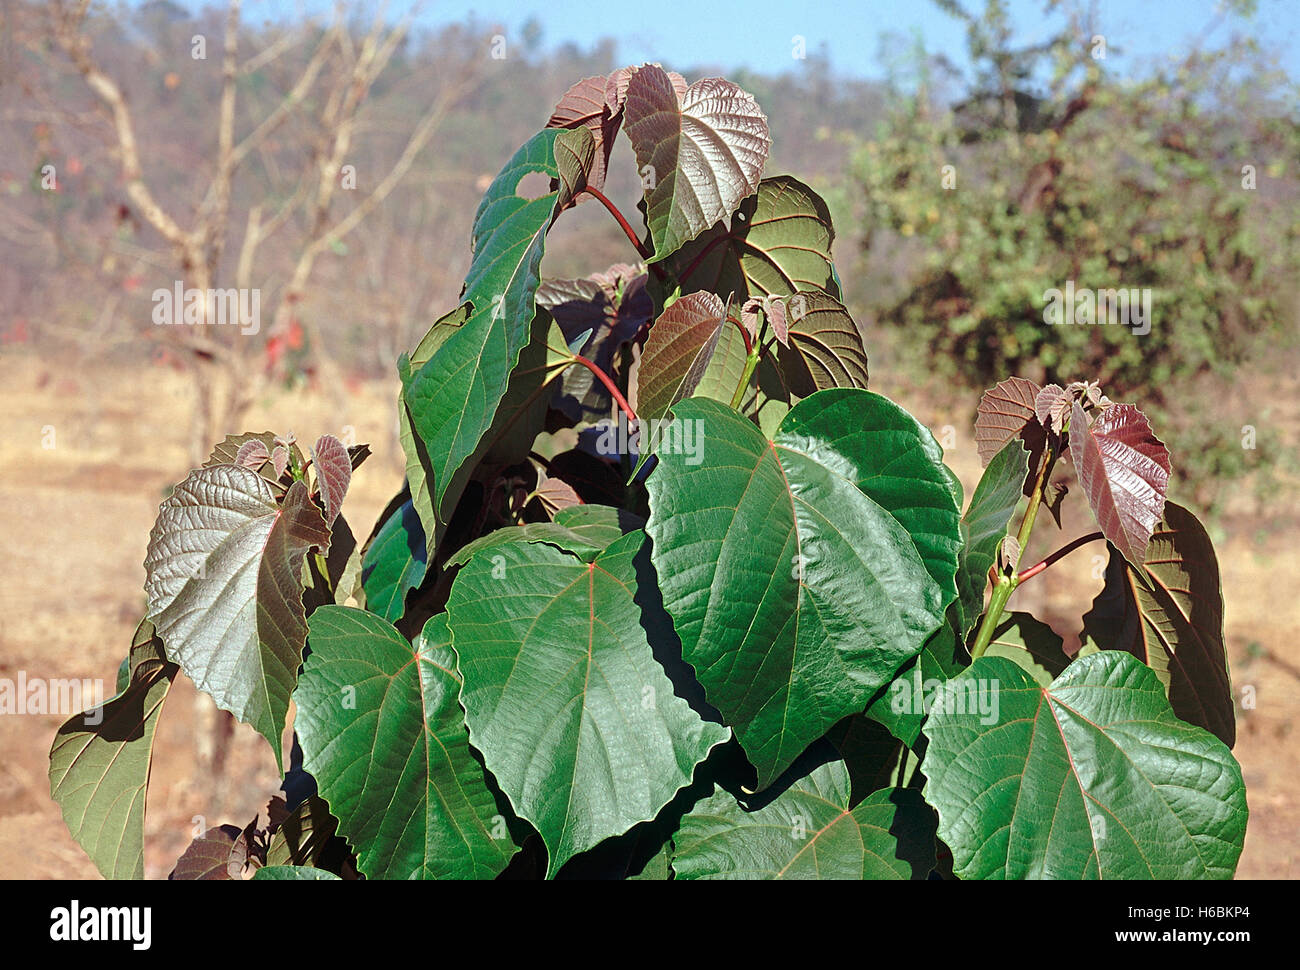 Les feuilles. trewia nudiflora. famille : euphorbiaceae. un arbre à feuilles caduques principalement dans les zones humides. Banque D'Images